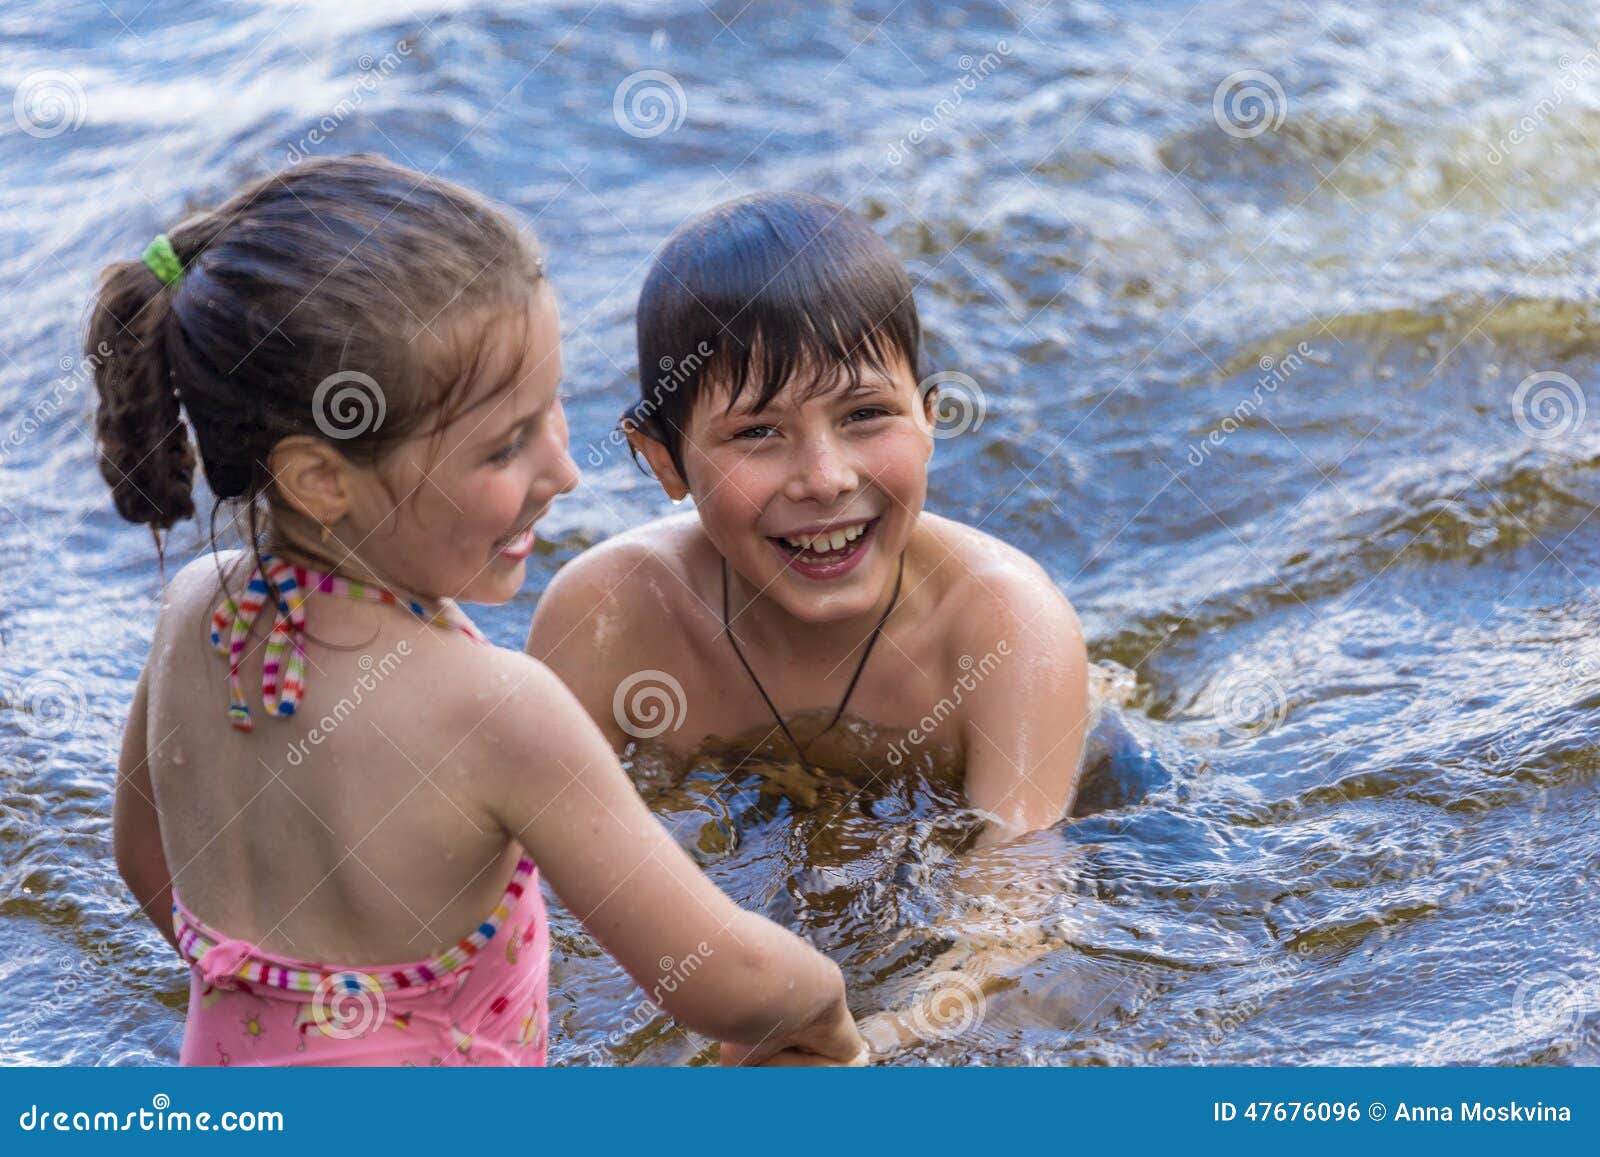 Сестренка купается. Сестрички купаемся дети. Две сестры купаются. Сестра купается. Младшая сестрёнка купается.